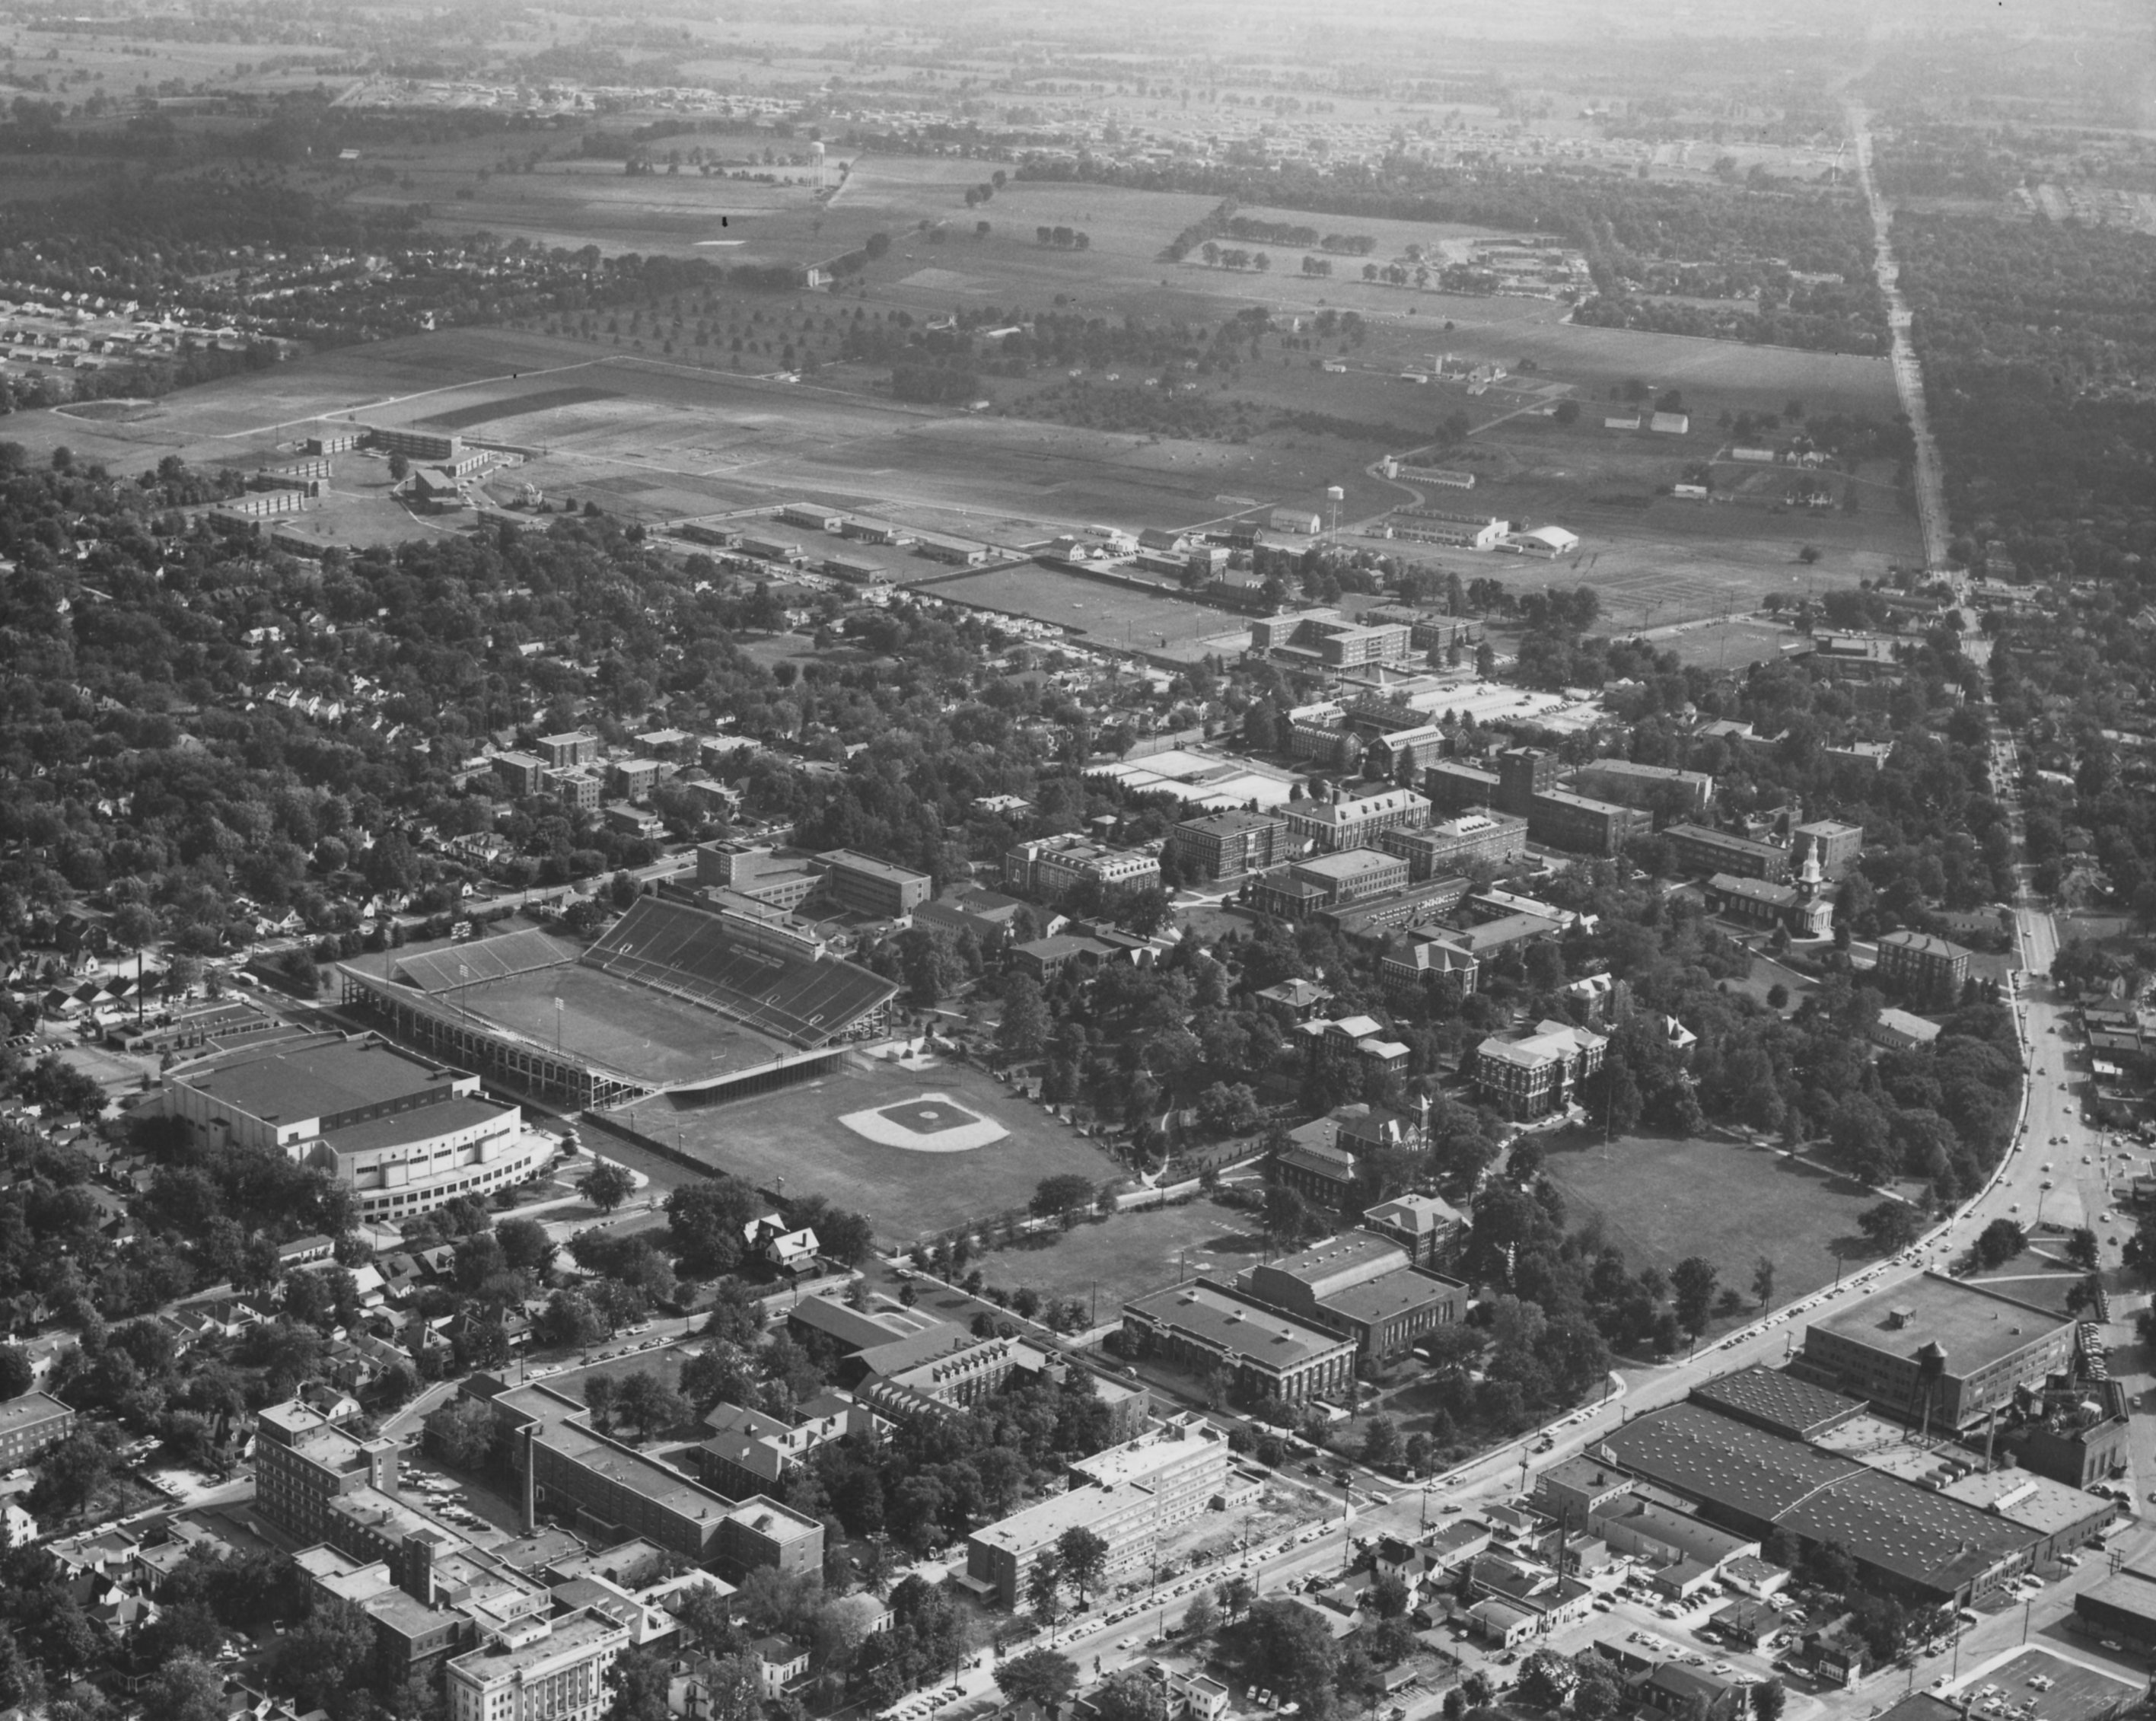 UK Campus 1957